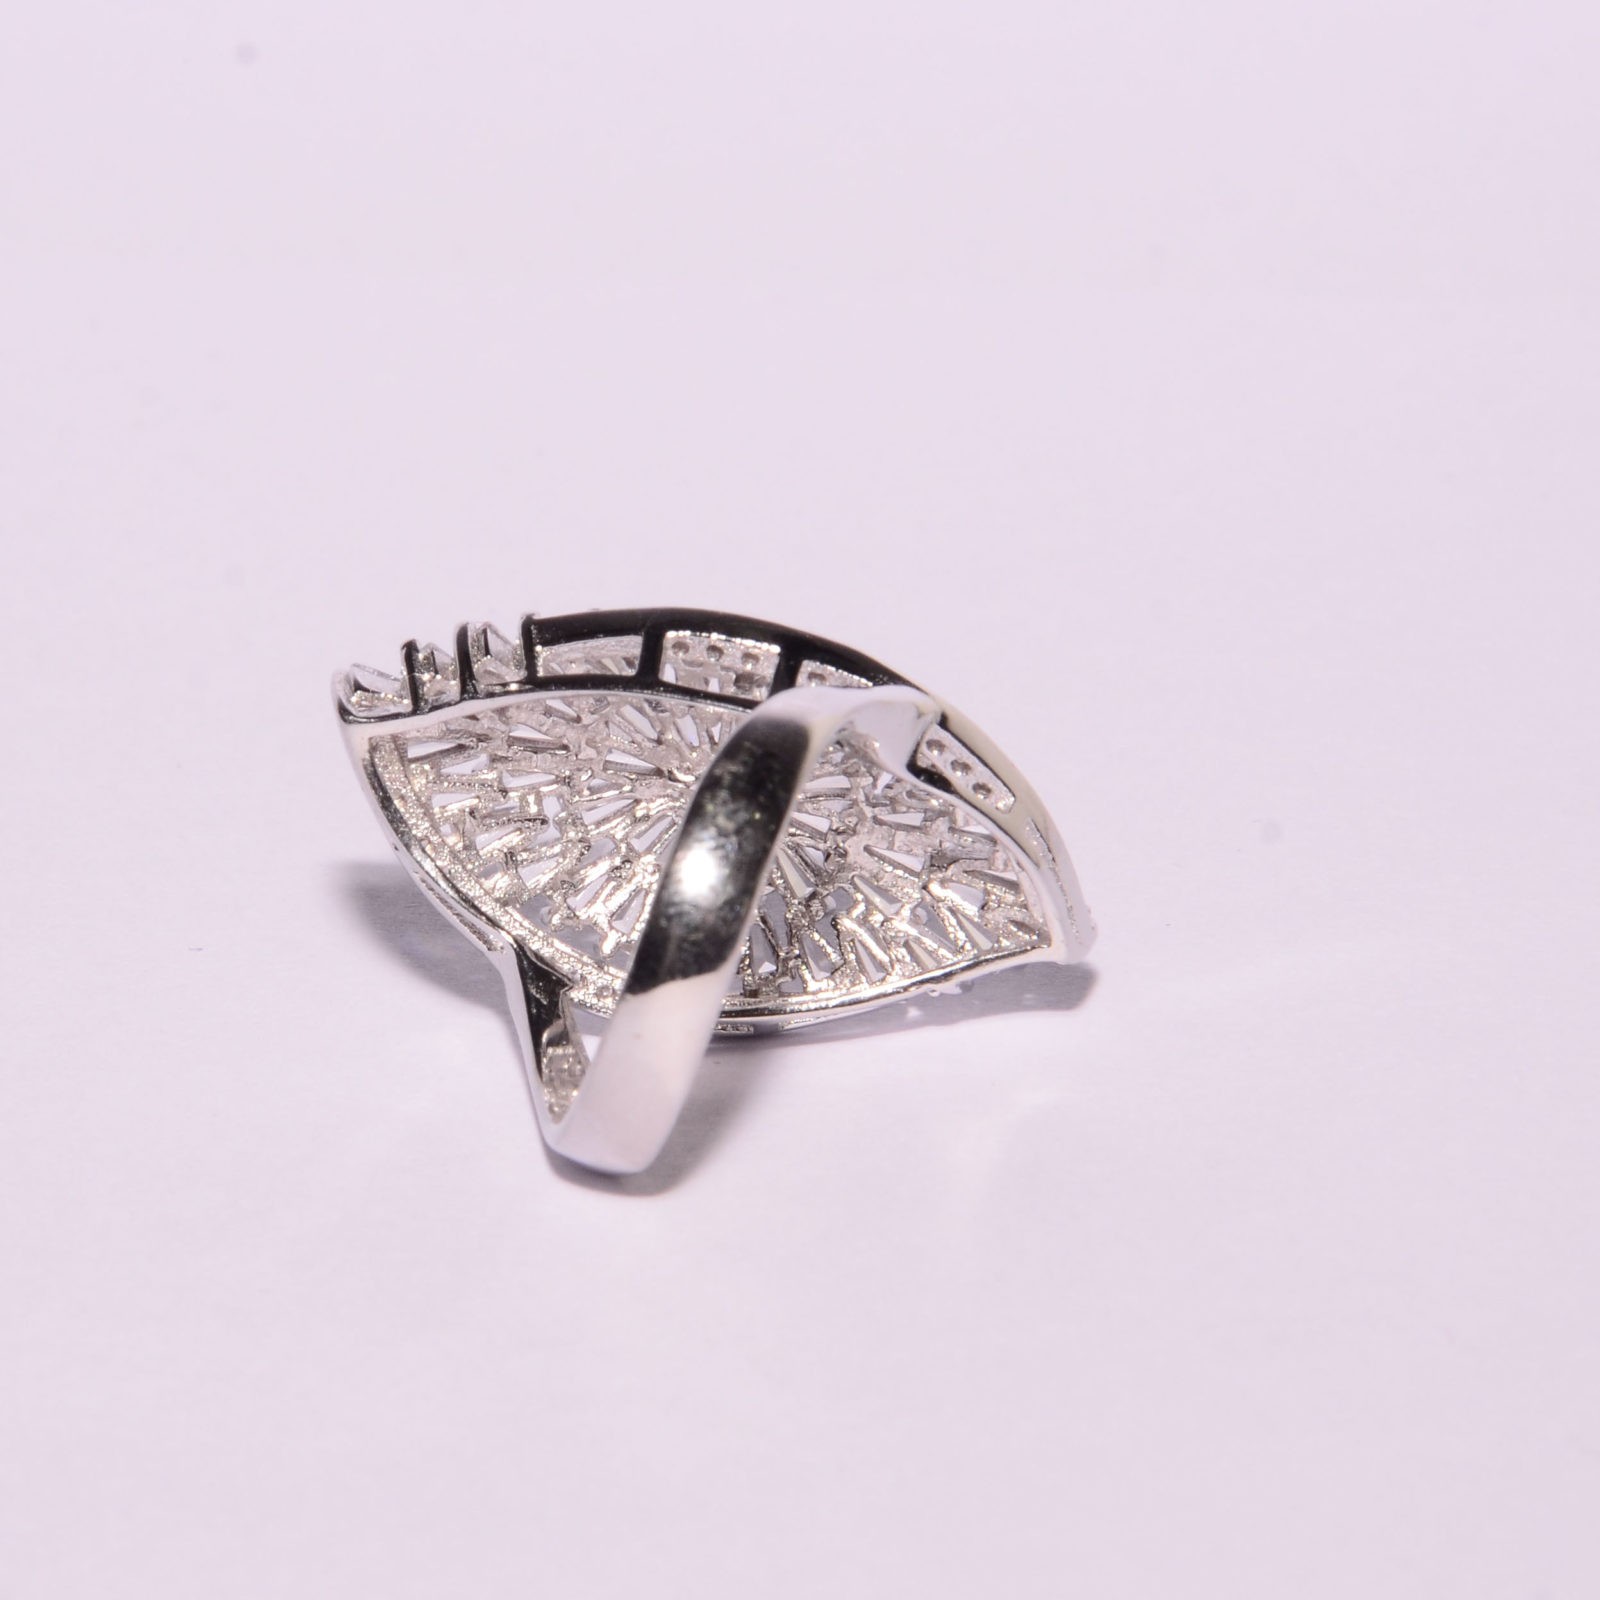 Italian Silver Ring 925 For Women Free Size - 805 price in Egypt | Jumia  Egypt | kanbkam